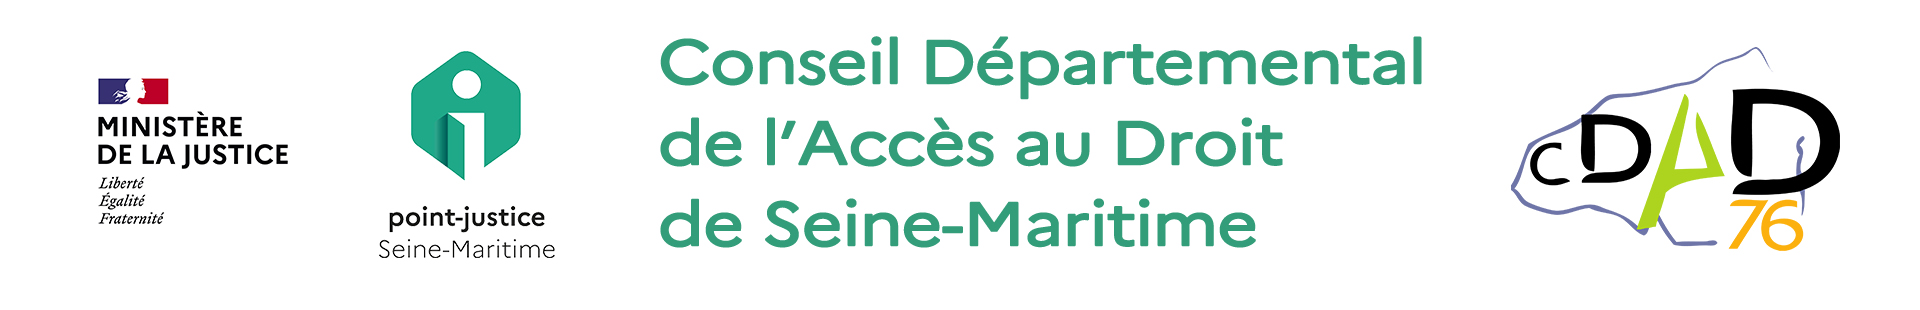 Conseil Départemental de l'Accès au droit de Seine-Maritime